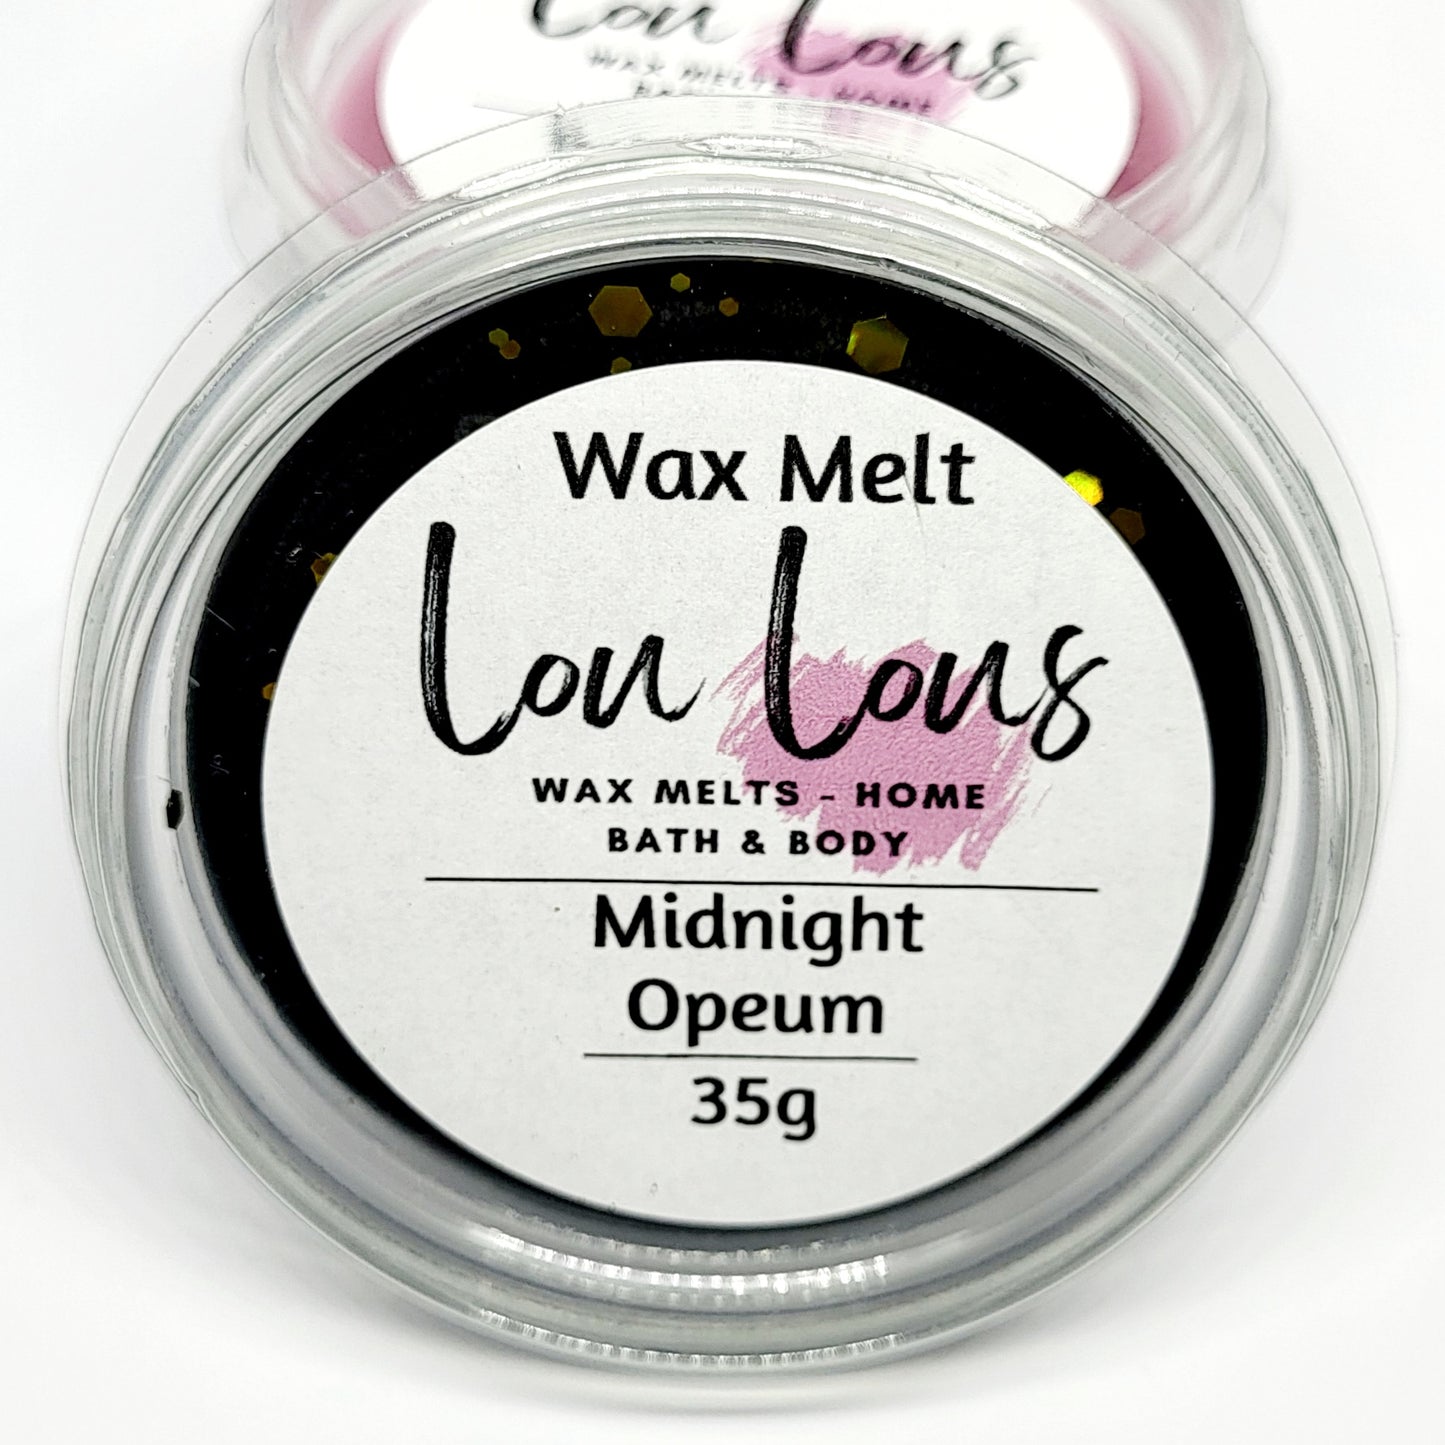 Midnight Opeum Wax Melt Pot